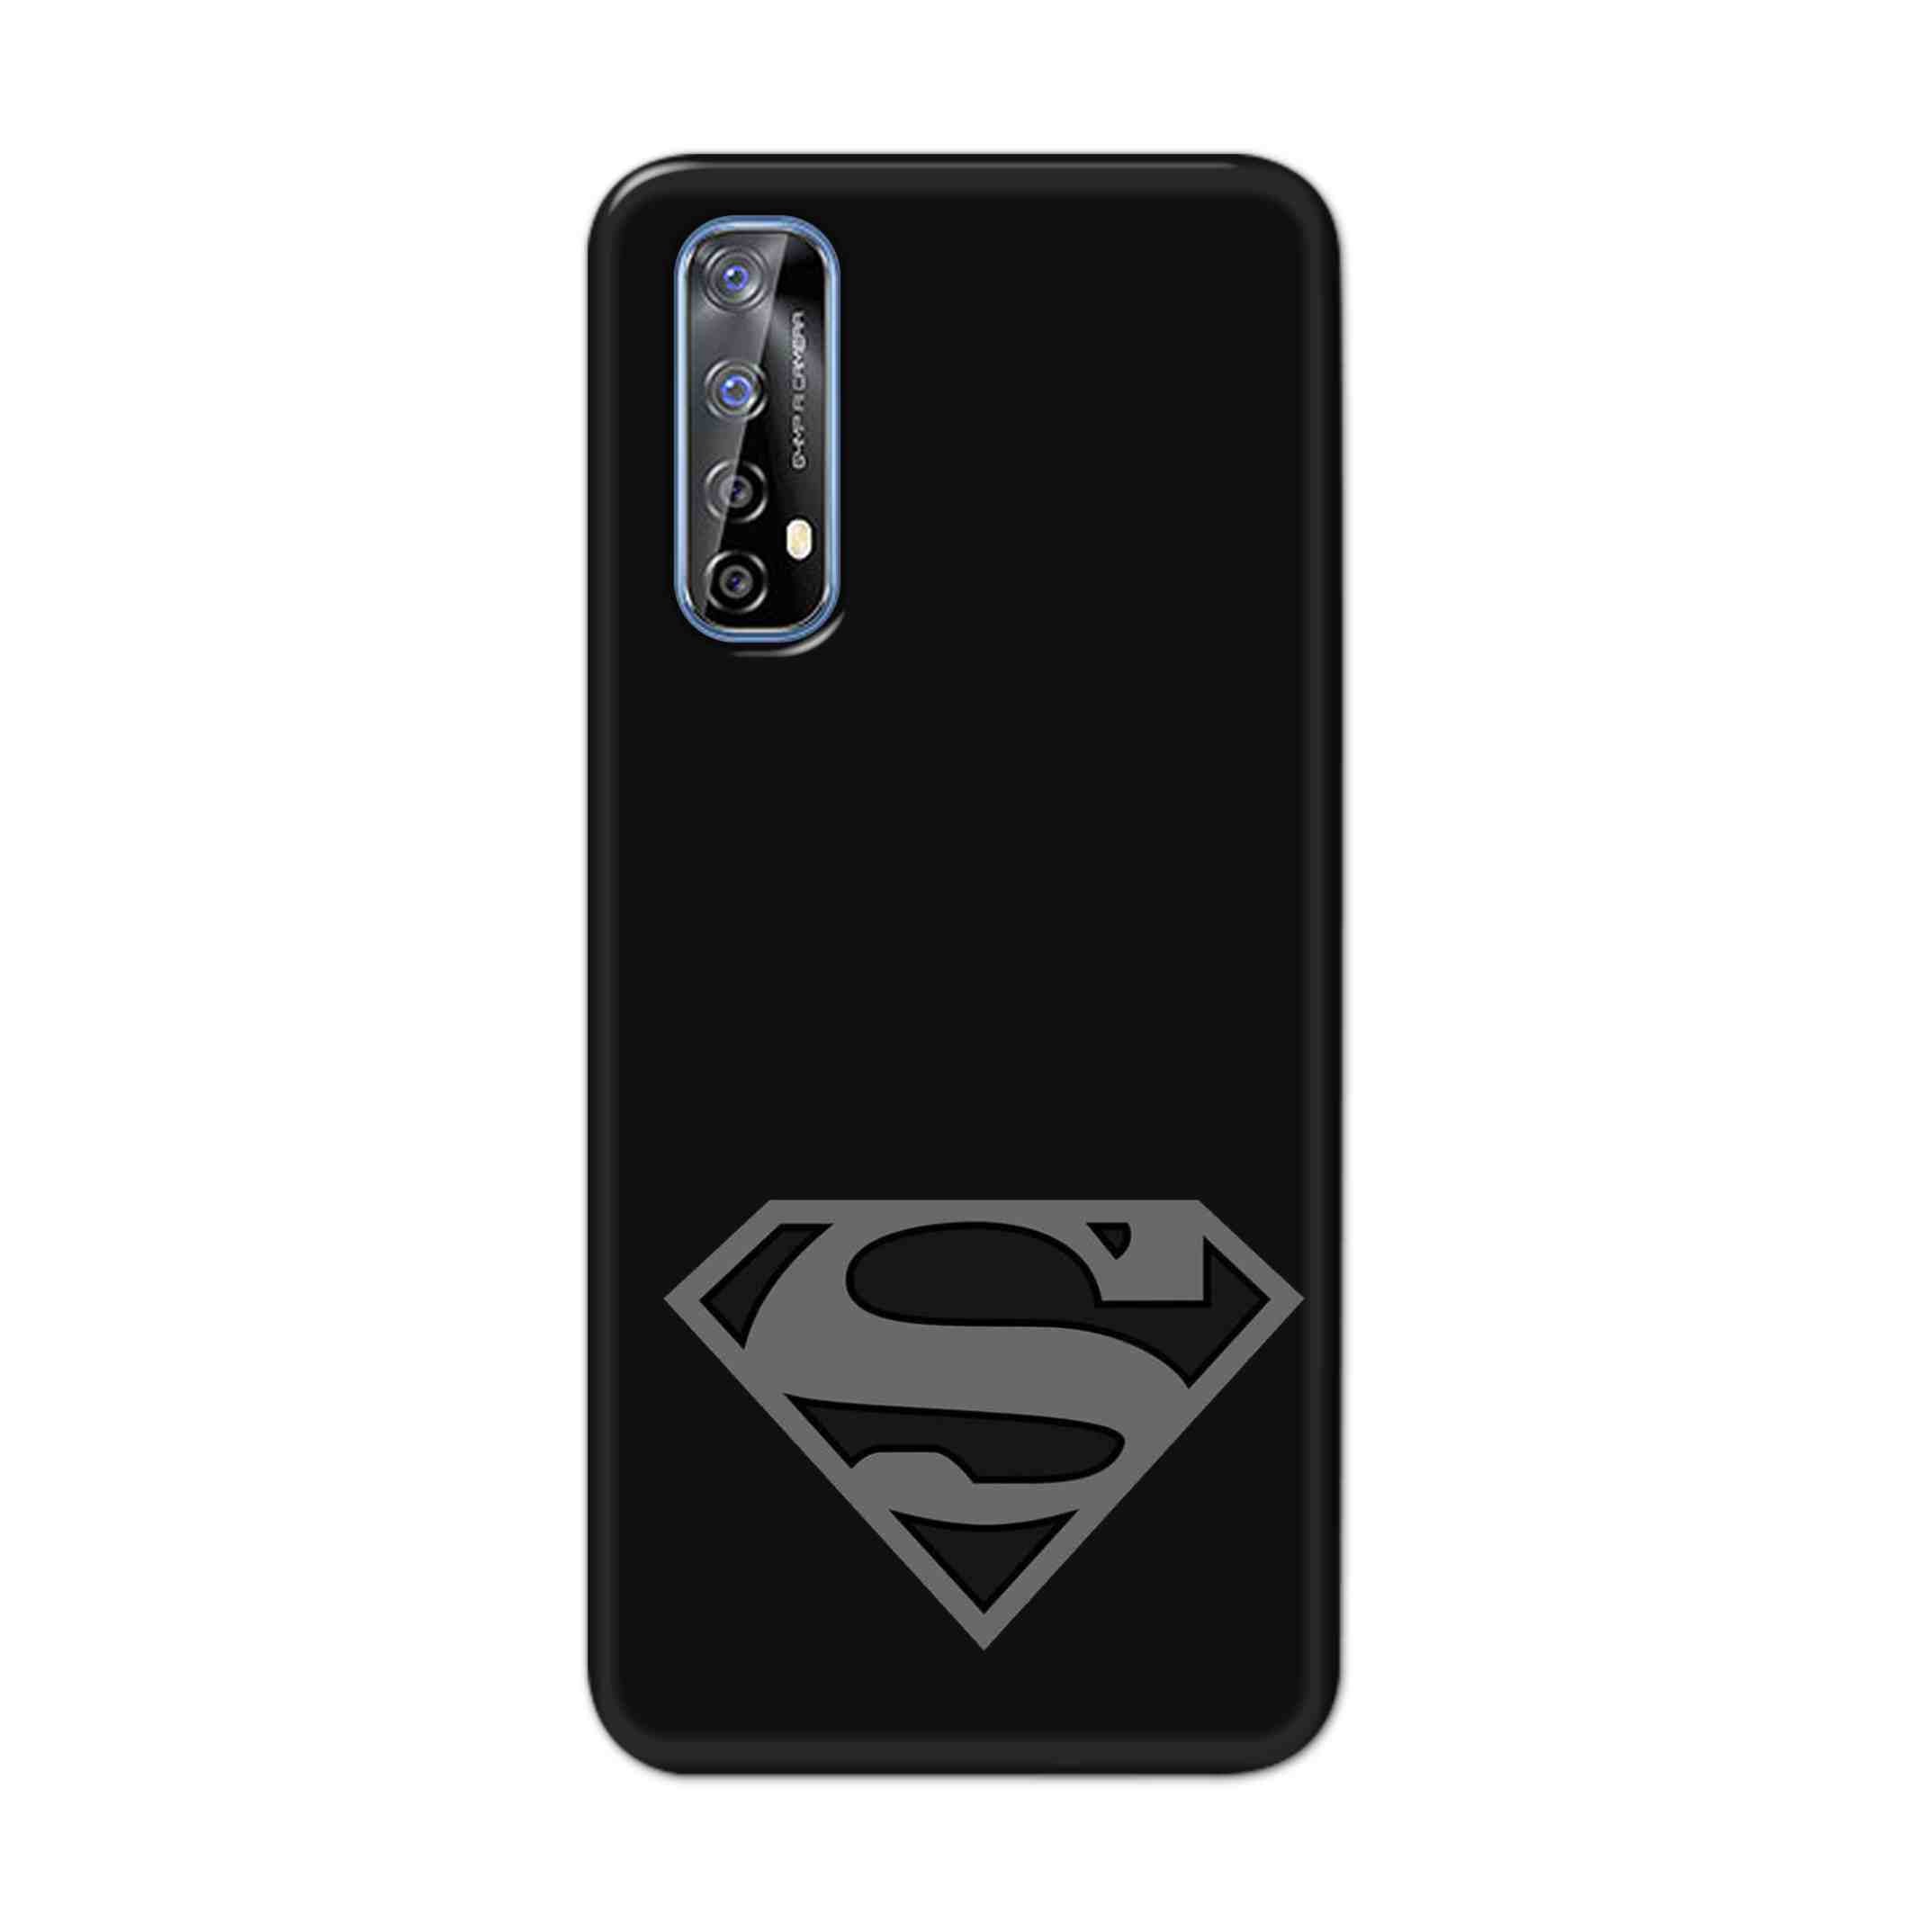 Buy Superman Logo Hard Back Mobile Phone Case Cover For Realme 7 Online